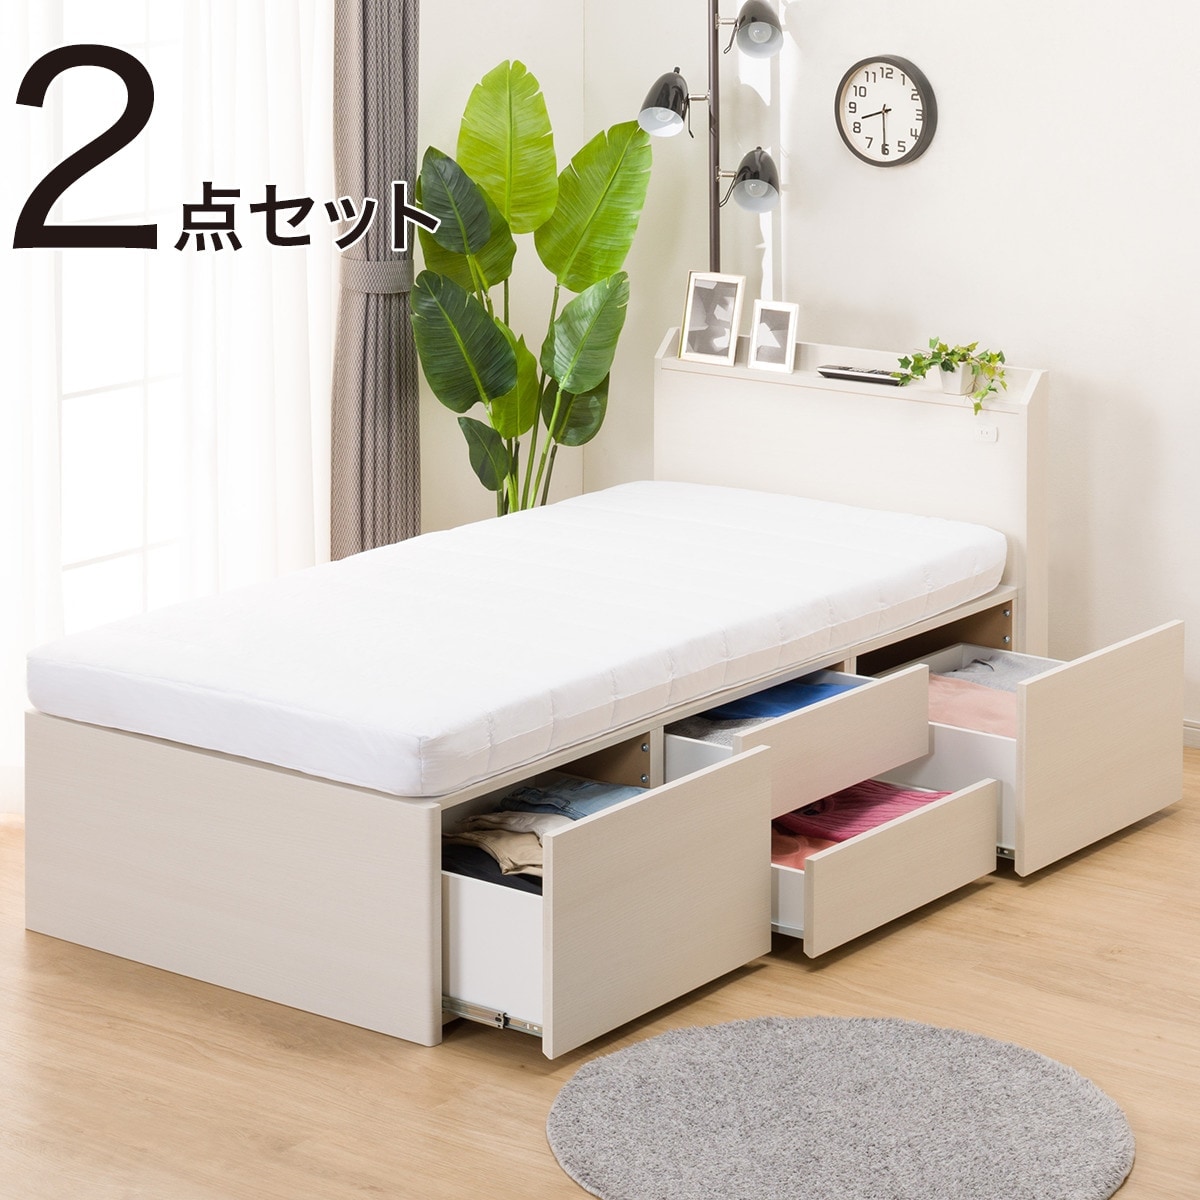 ニトリ 収納ベッド シングル マットレス付き - 大阪府の家具